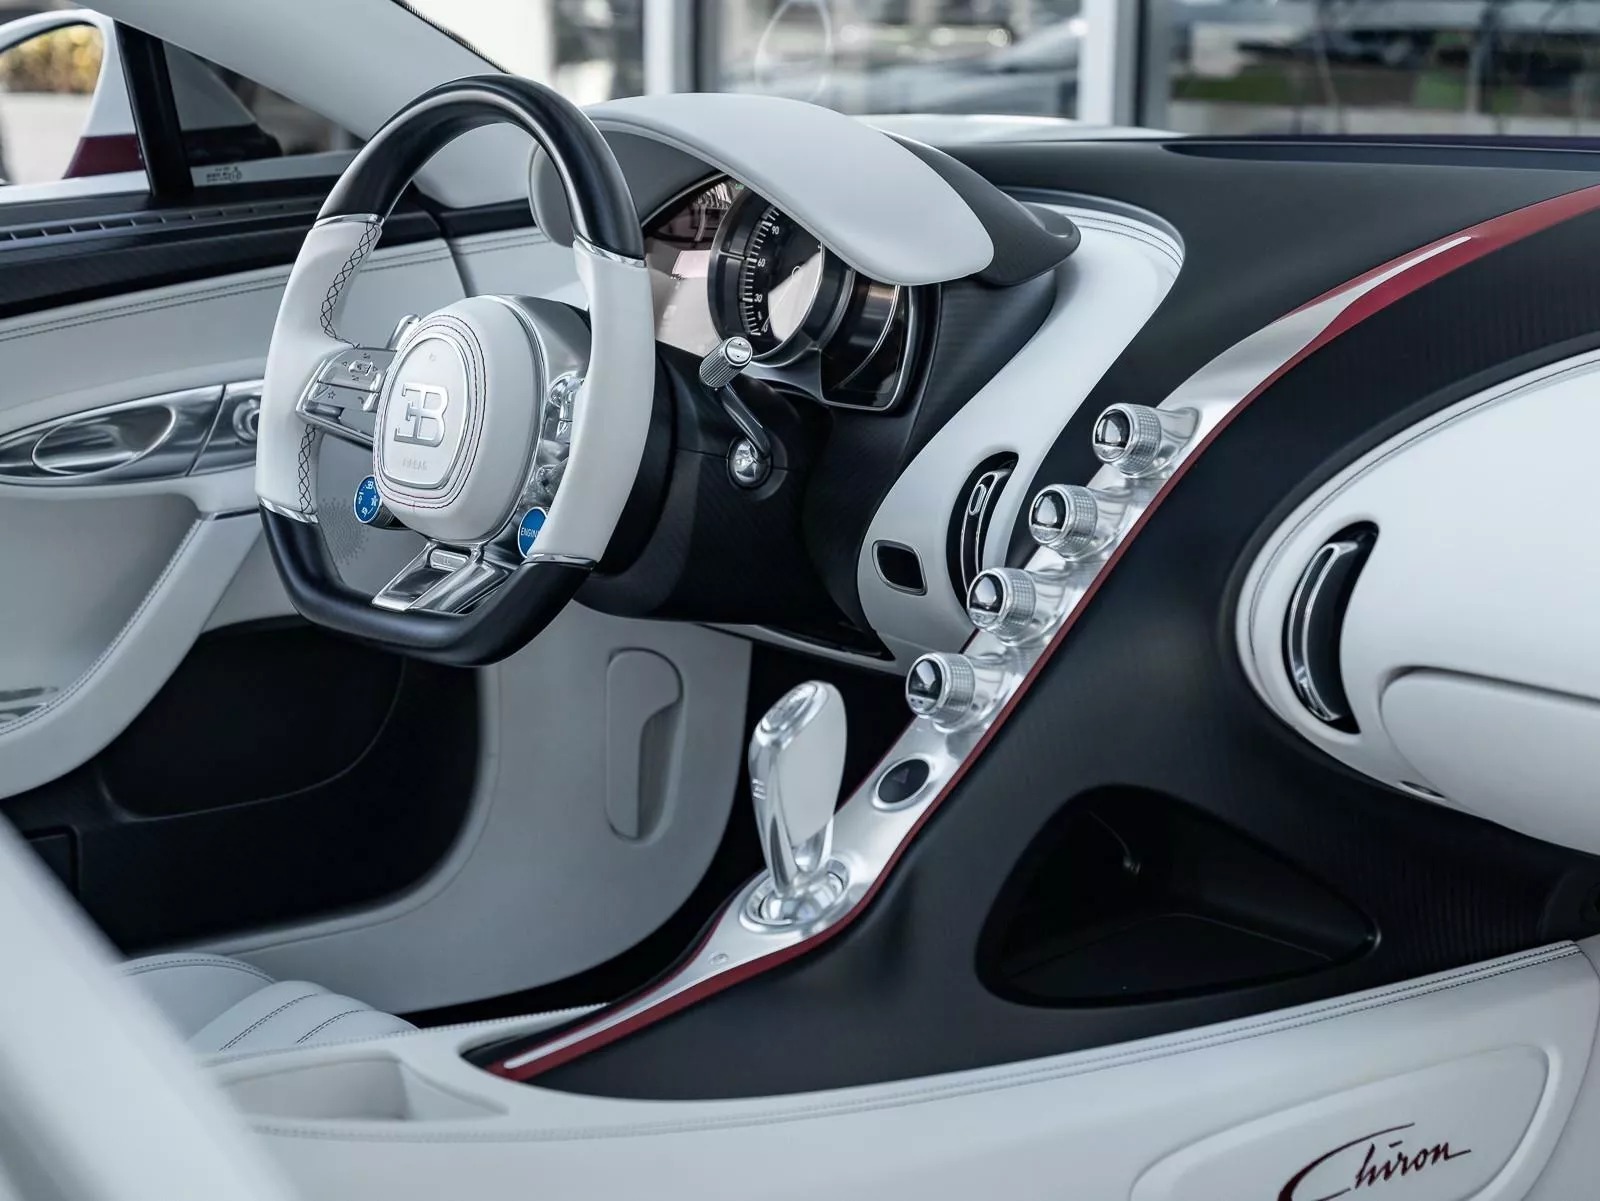 Rao bán Bugatti Chiron giá quy đổi hơn 95 tỷ đồng, chủ xe hứa tặng kèm Rolls-Royce Wraith hợp tông màu- Ảnh 4.